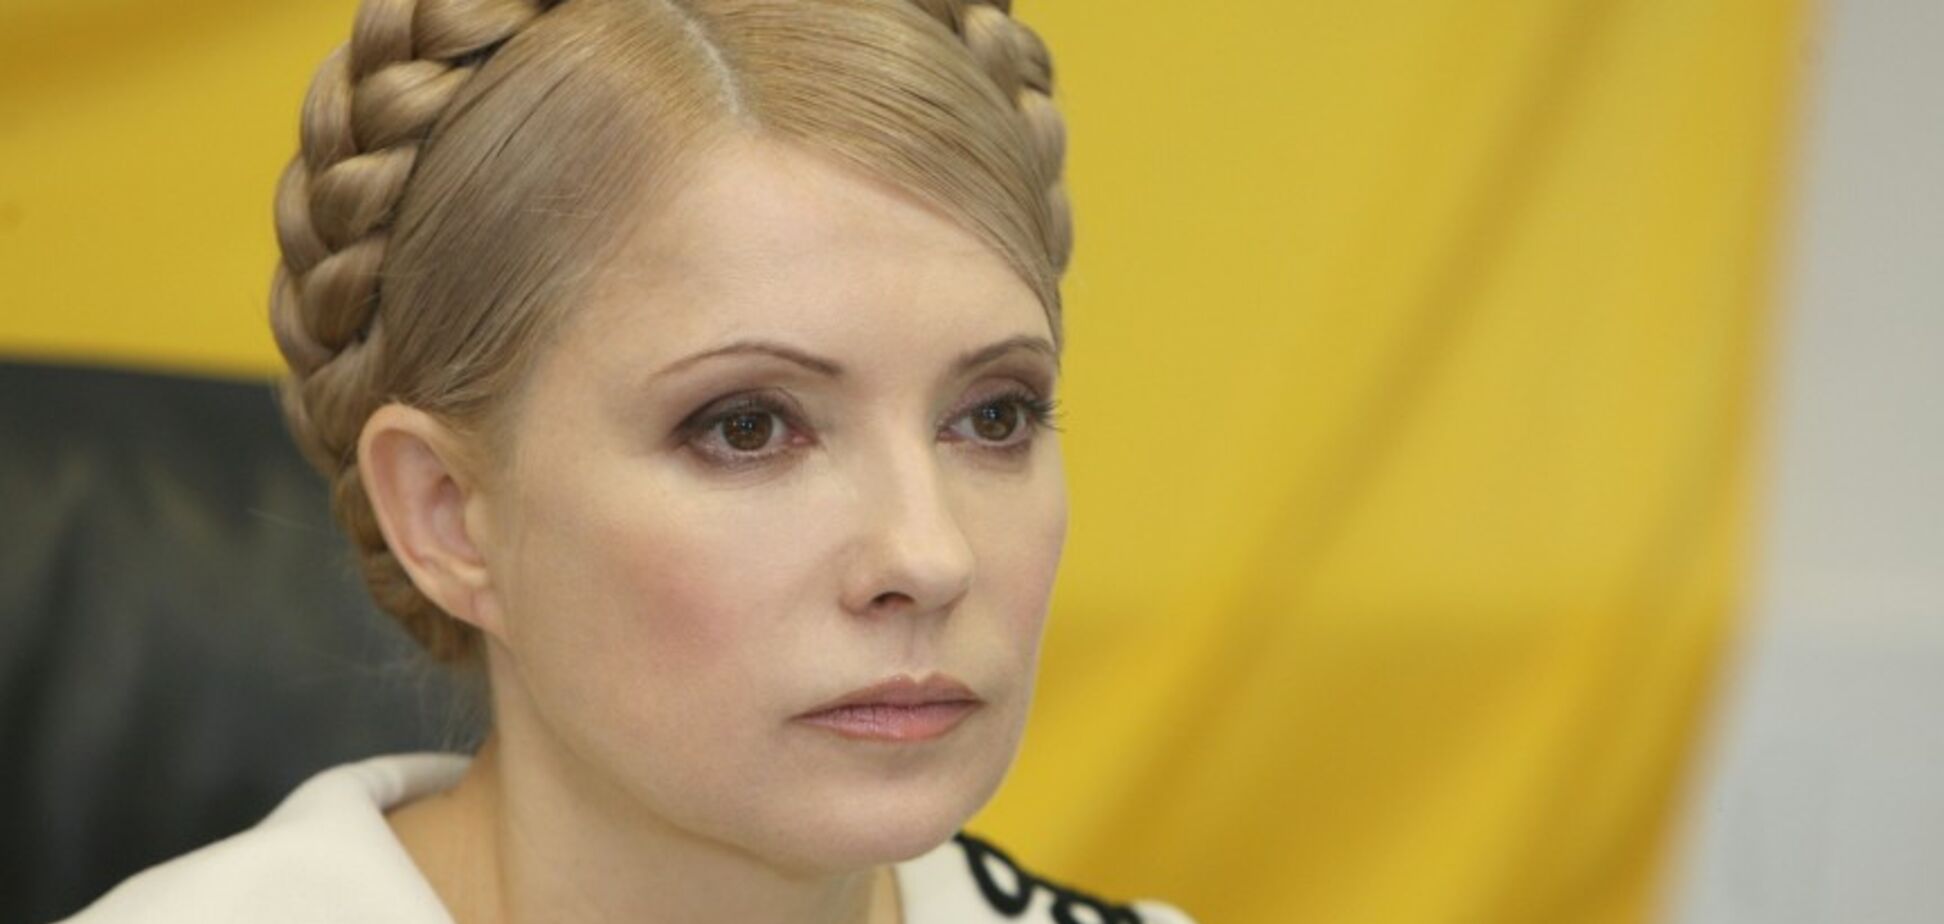 Демократическая оппозиция объединится ради будущего Украины — Тимошенко